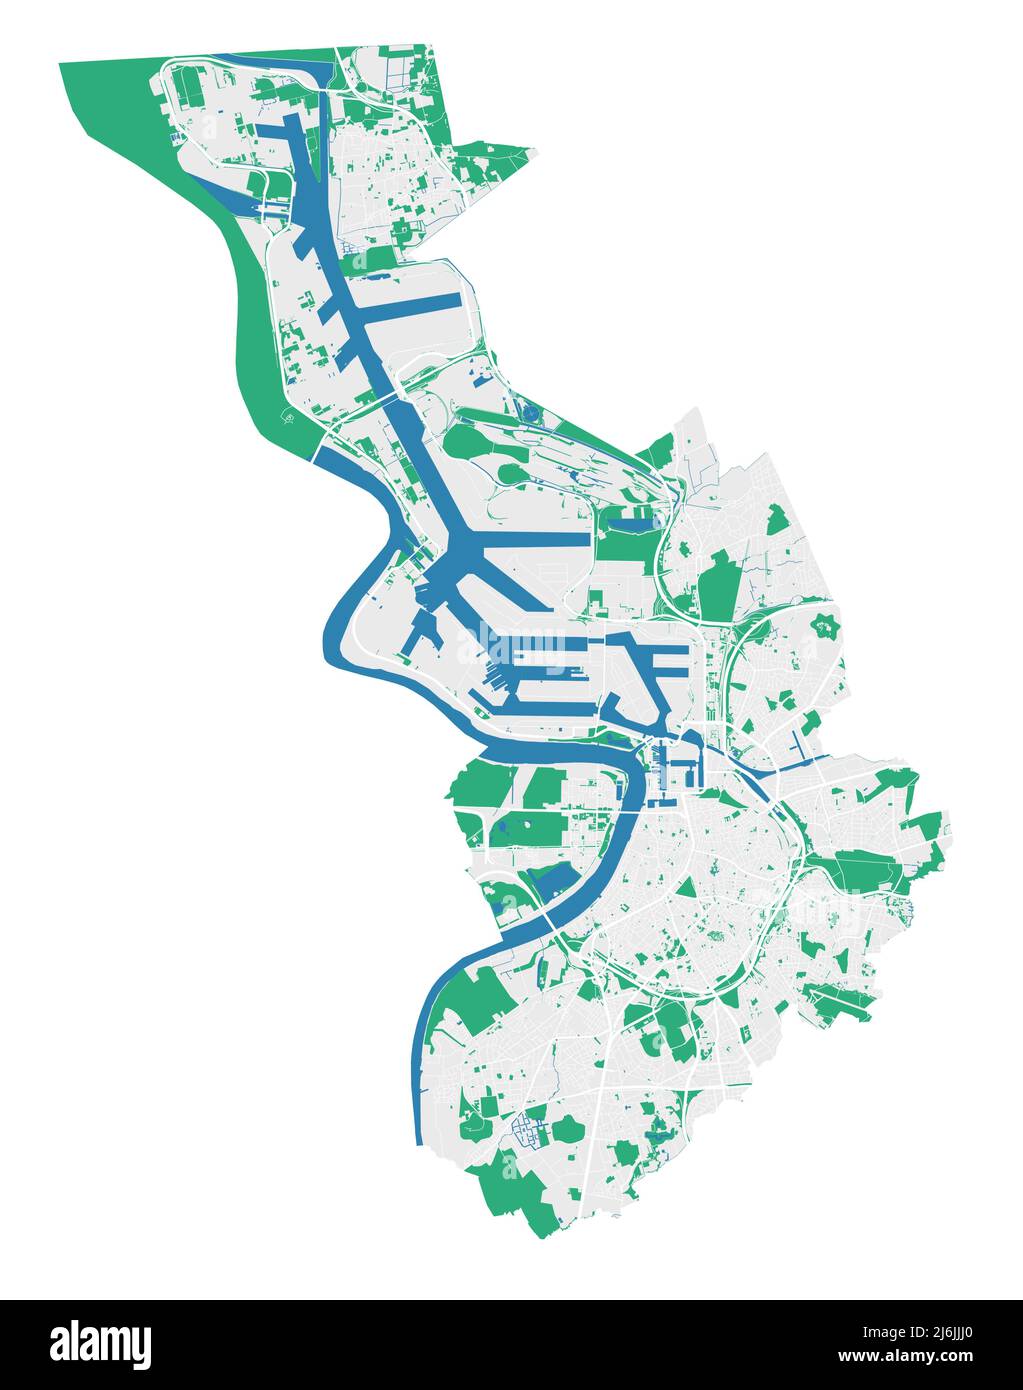 Karte von Antwerpen. Detaillierte Karte des Verwaltungsgebiets der Stadt Antwerpen. Stadtbild-Panorama. Lizenzfreie Vektorgrafik. Übersichtskarte mit Autobahnen, Straße Stock Vektor